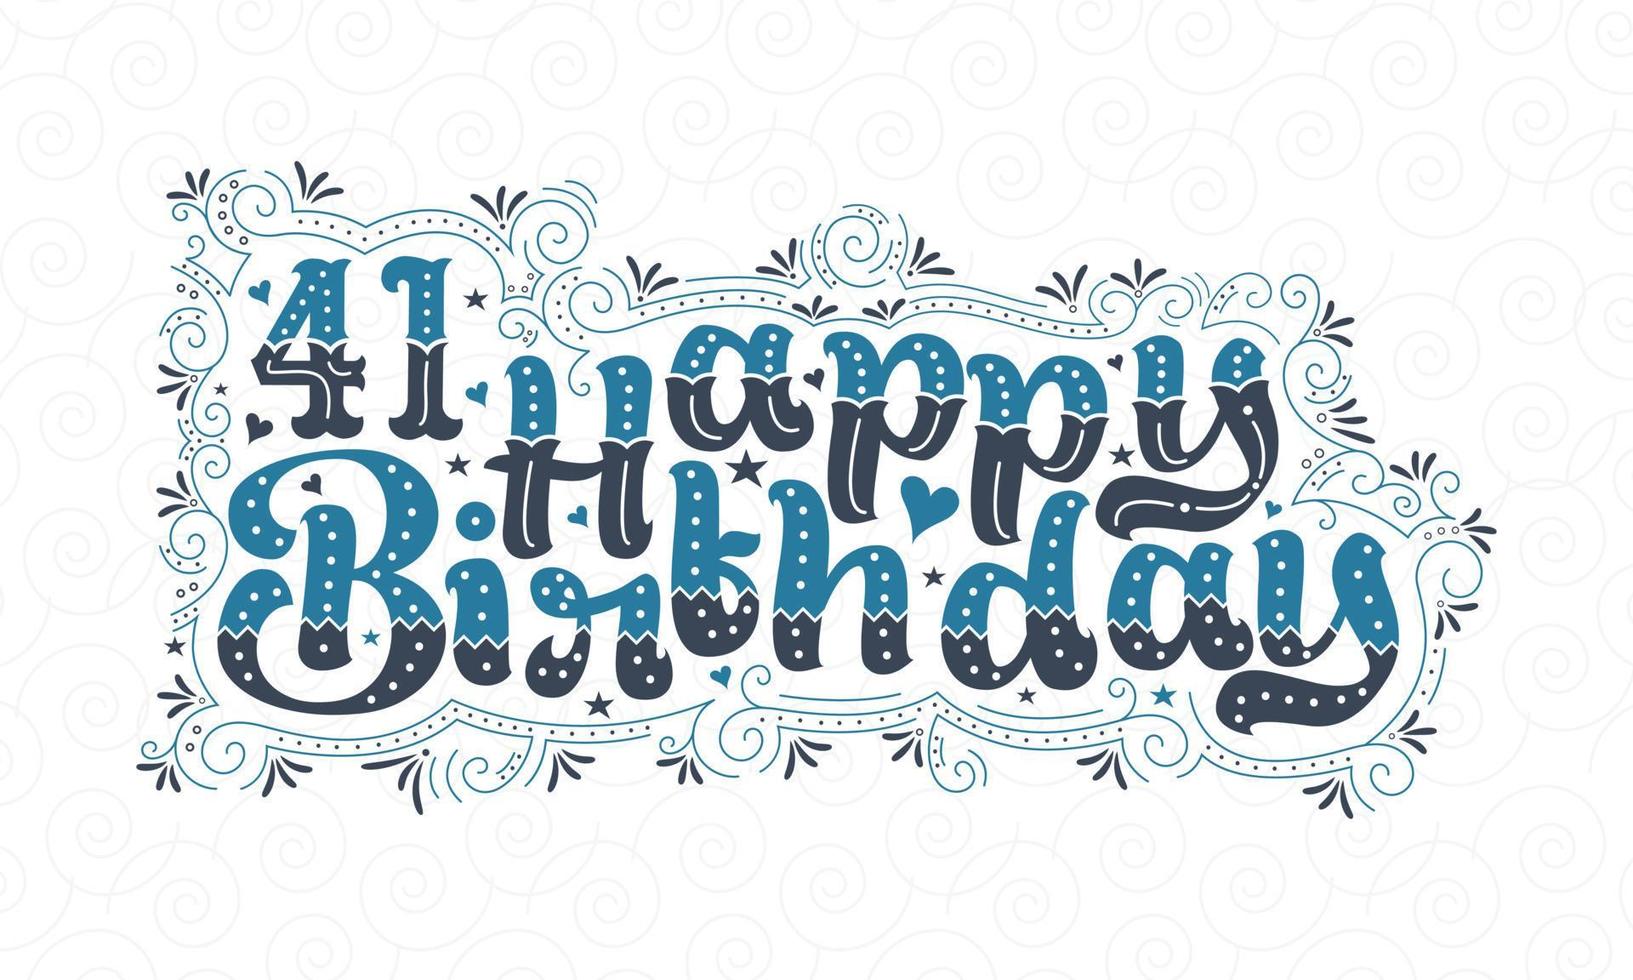 41e lettrage de joyeux anniversaire, 41 ans d'anniversaire belle conception de typographie avec des points, des lignes et des feuilles bleus et noirs. vecteur